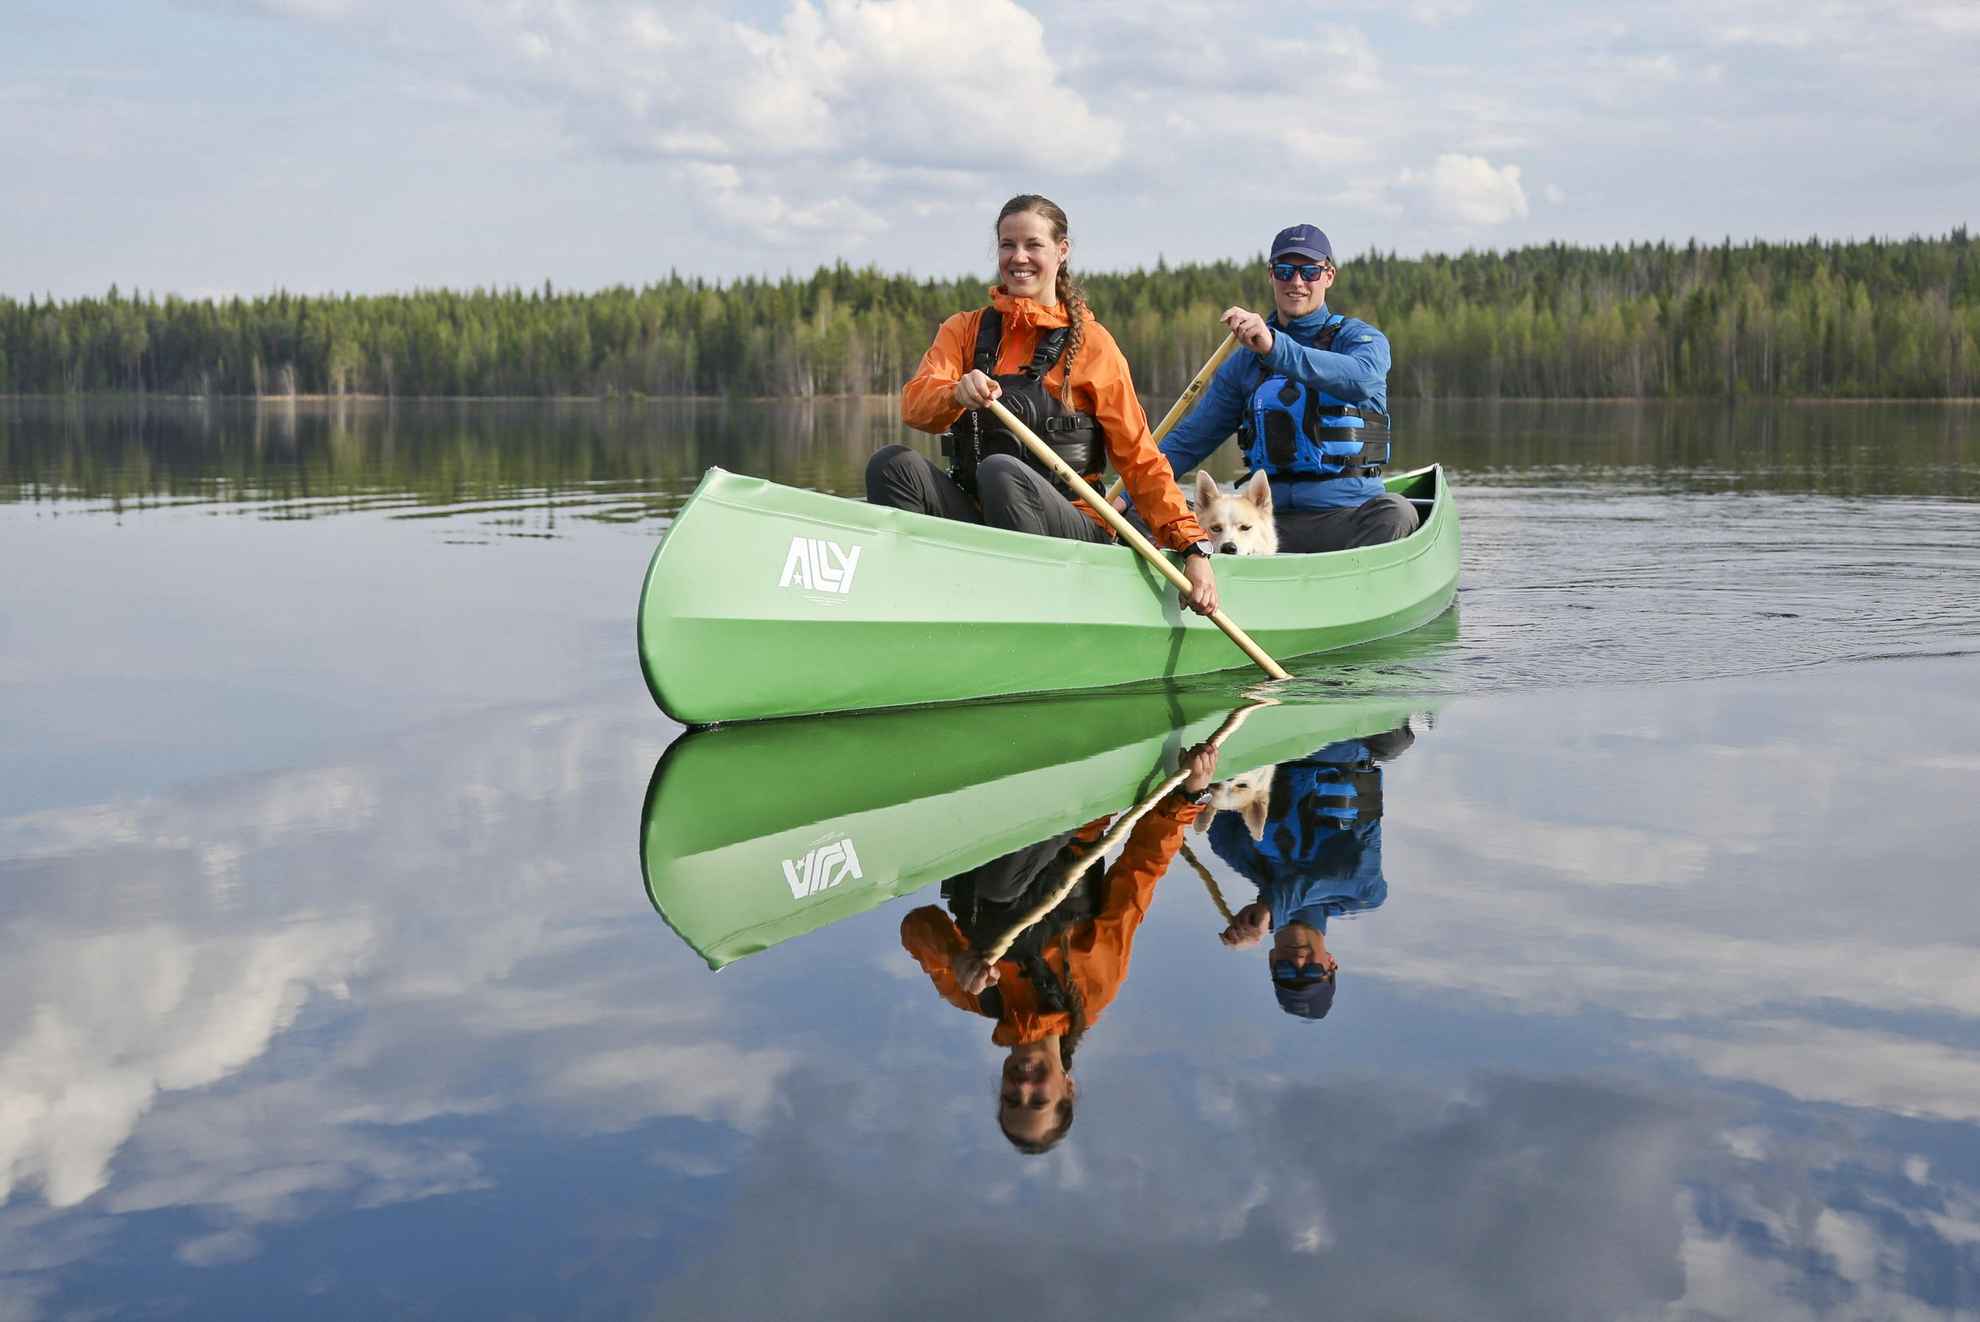 Een man en een vrouw die samen kanoën in water omringd door bos.